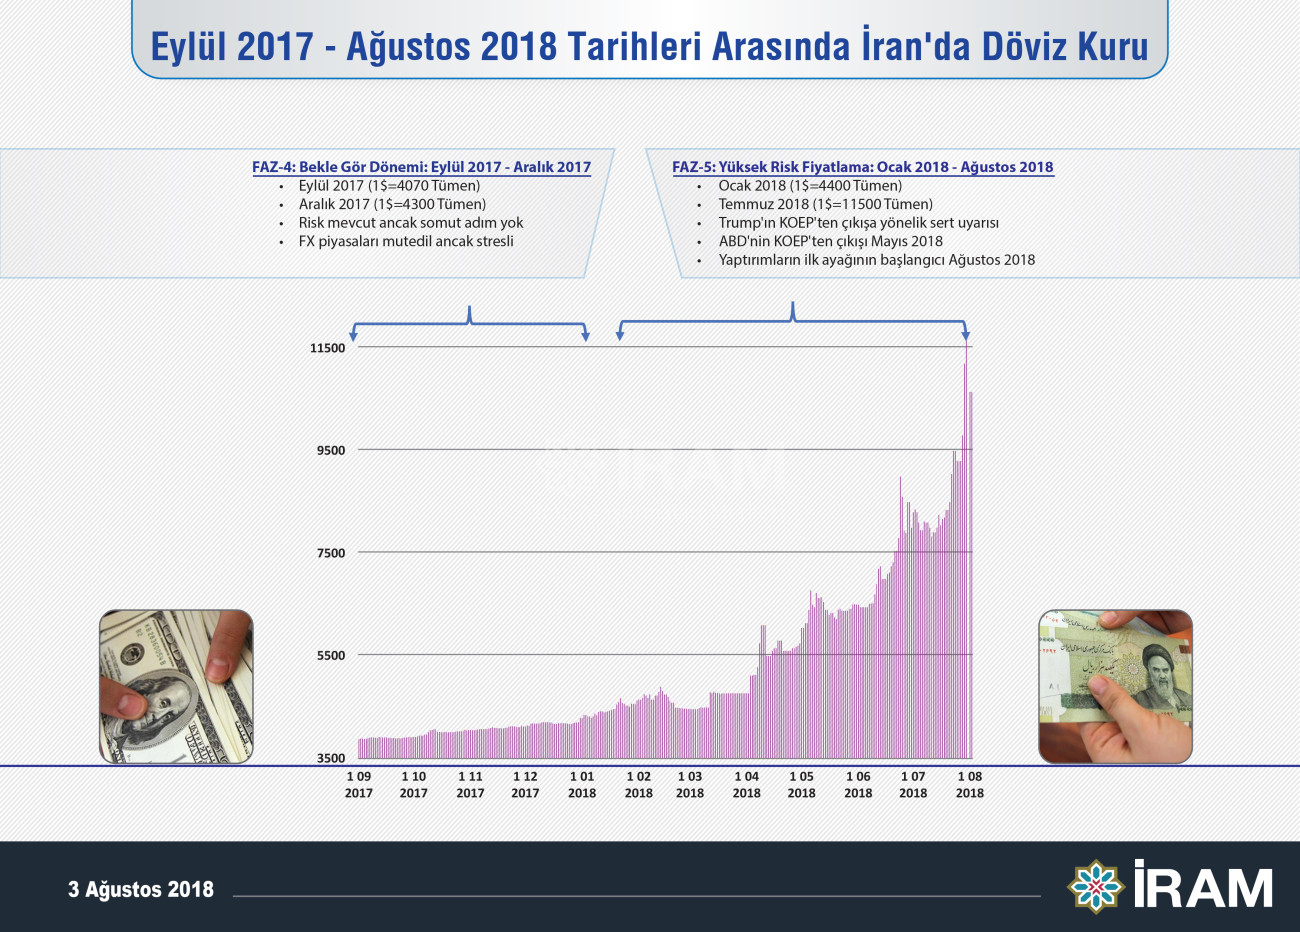 Eylül 2017 - Ağustos 2018 tarihleri arasında İran'da döviz kuru